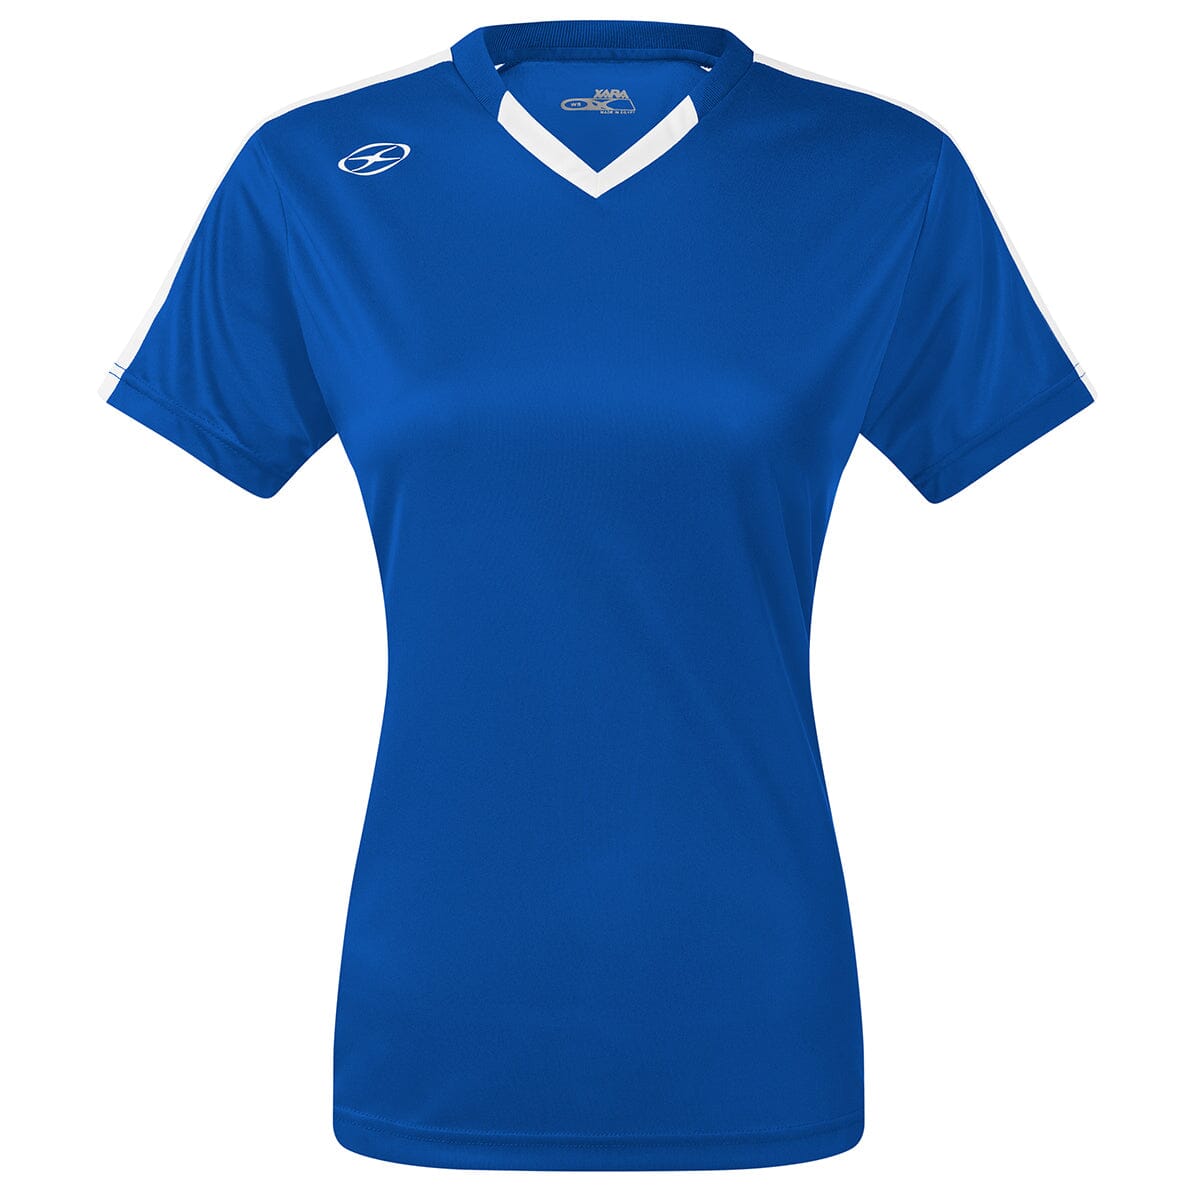 Britannia Jersey - Home Colors - Female Shirt Xara Soccer Royal/White Womens Medium 